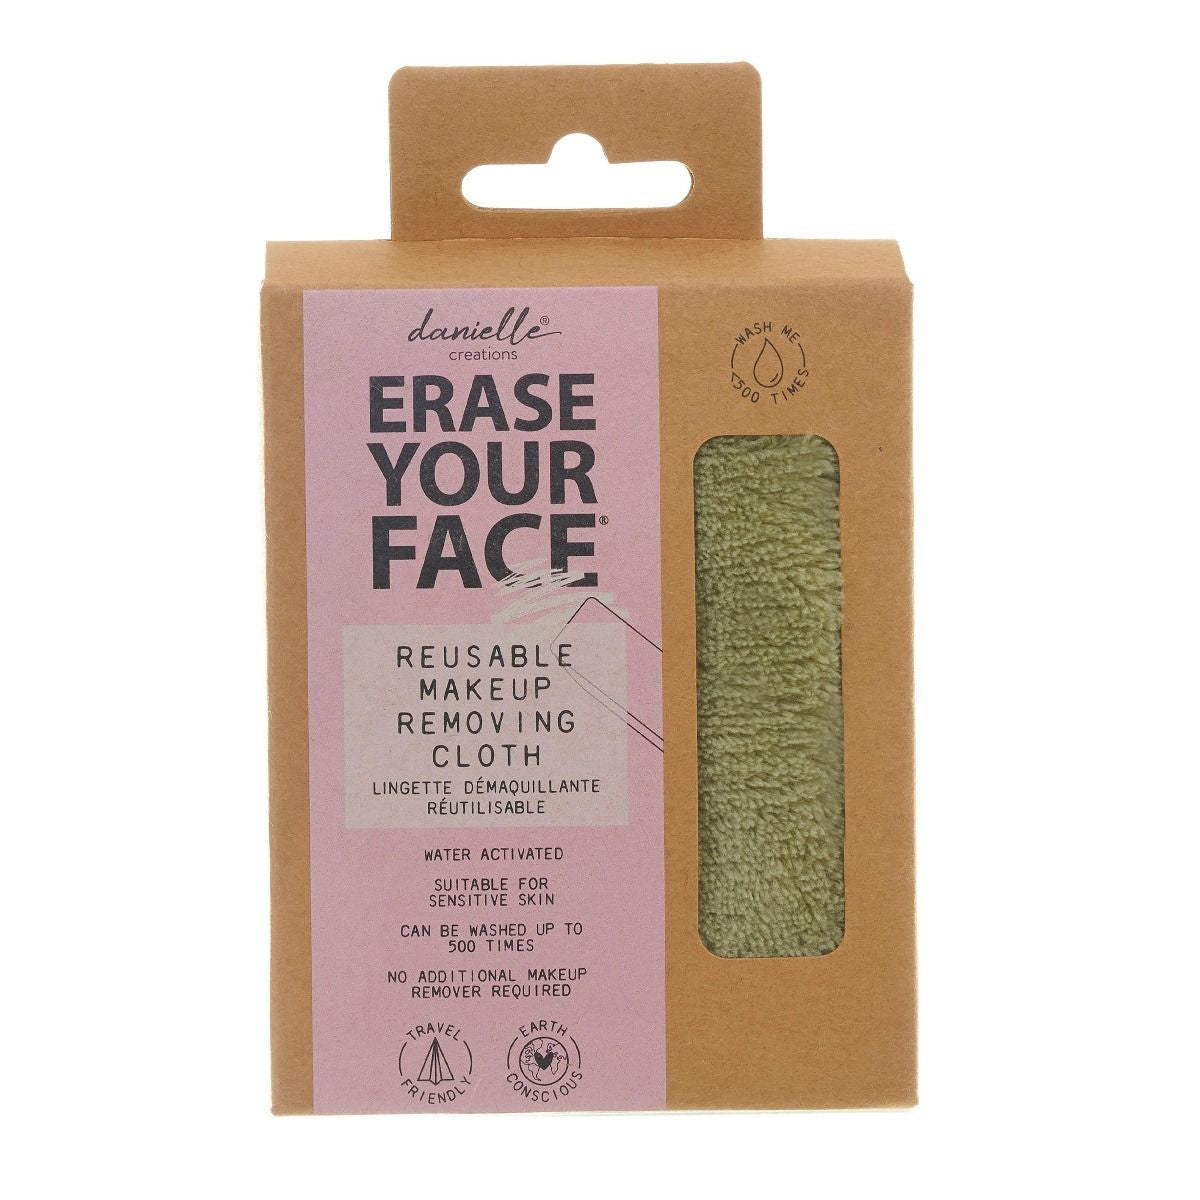 Erase Your Face - Reusable Makeup Removing Cloth - Green